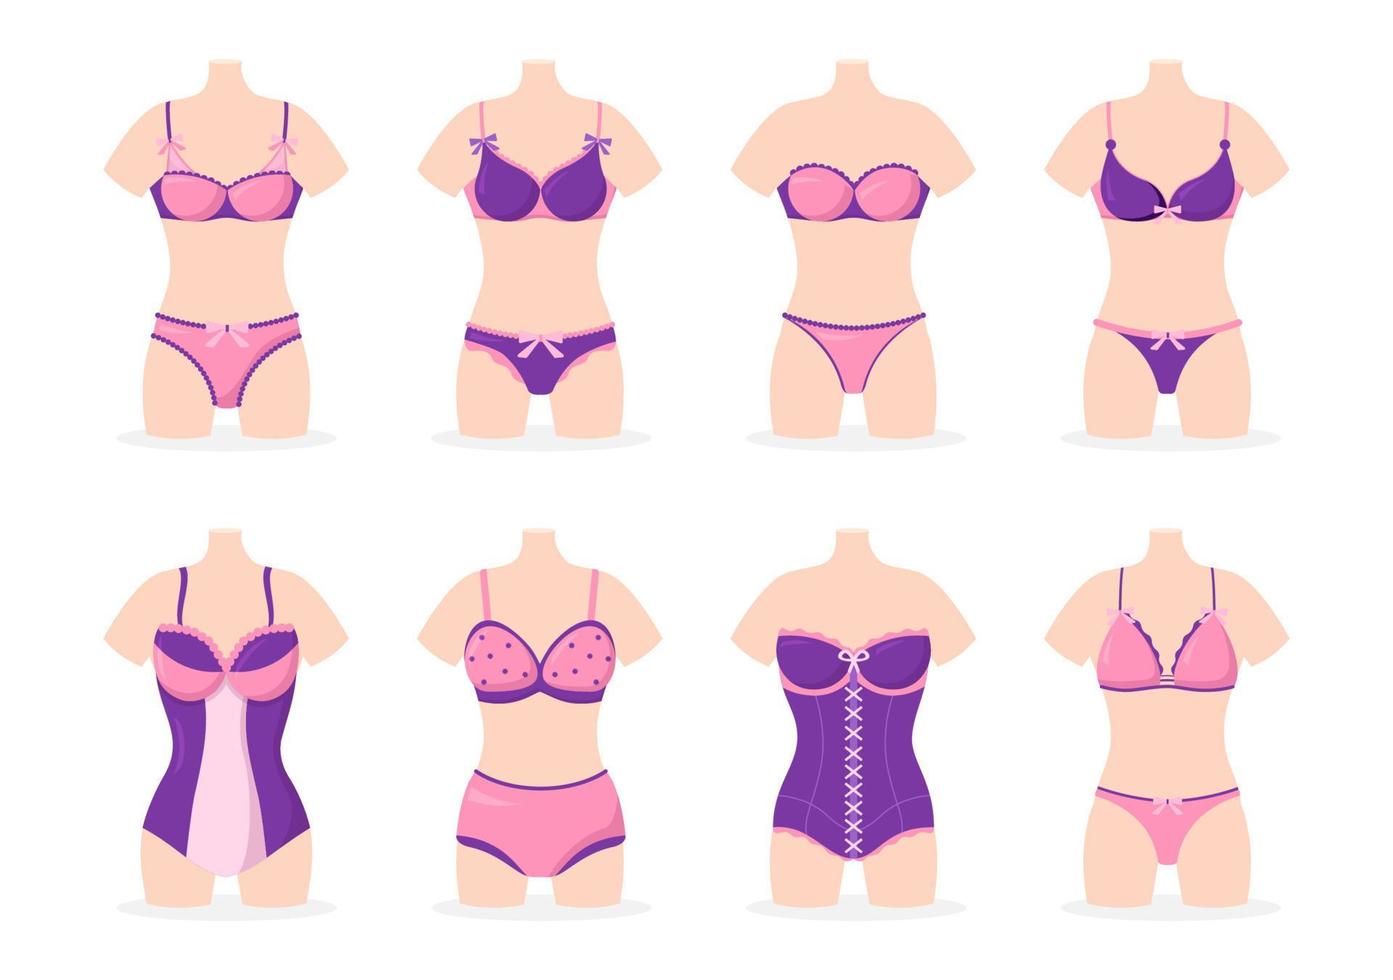 collection de lingerie femme élégante, soutien-gorge et sous-vêtements de couleur rose et violet sur illustration de modèles dessinés à la main dessin animé plat vecteur